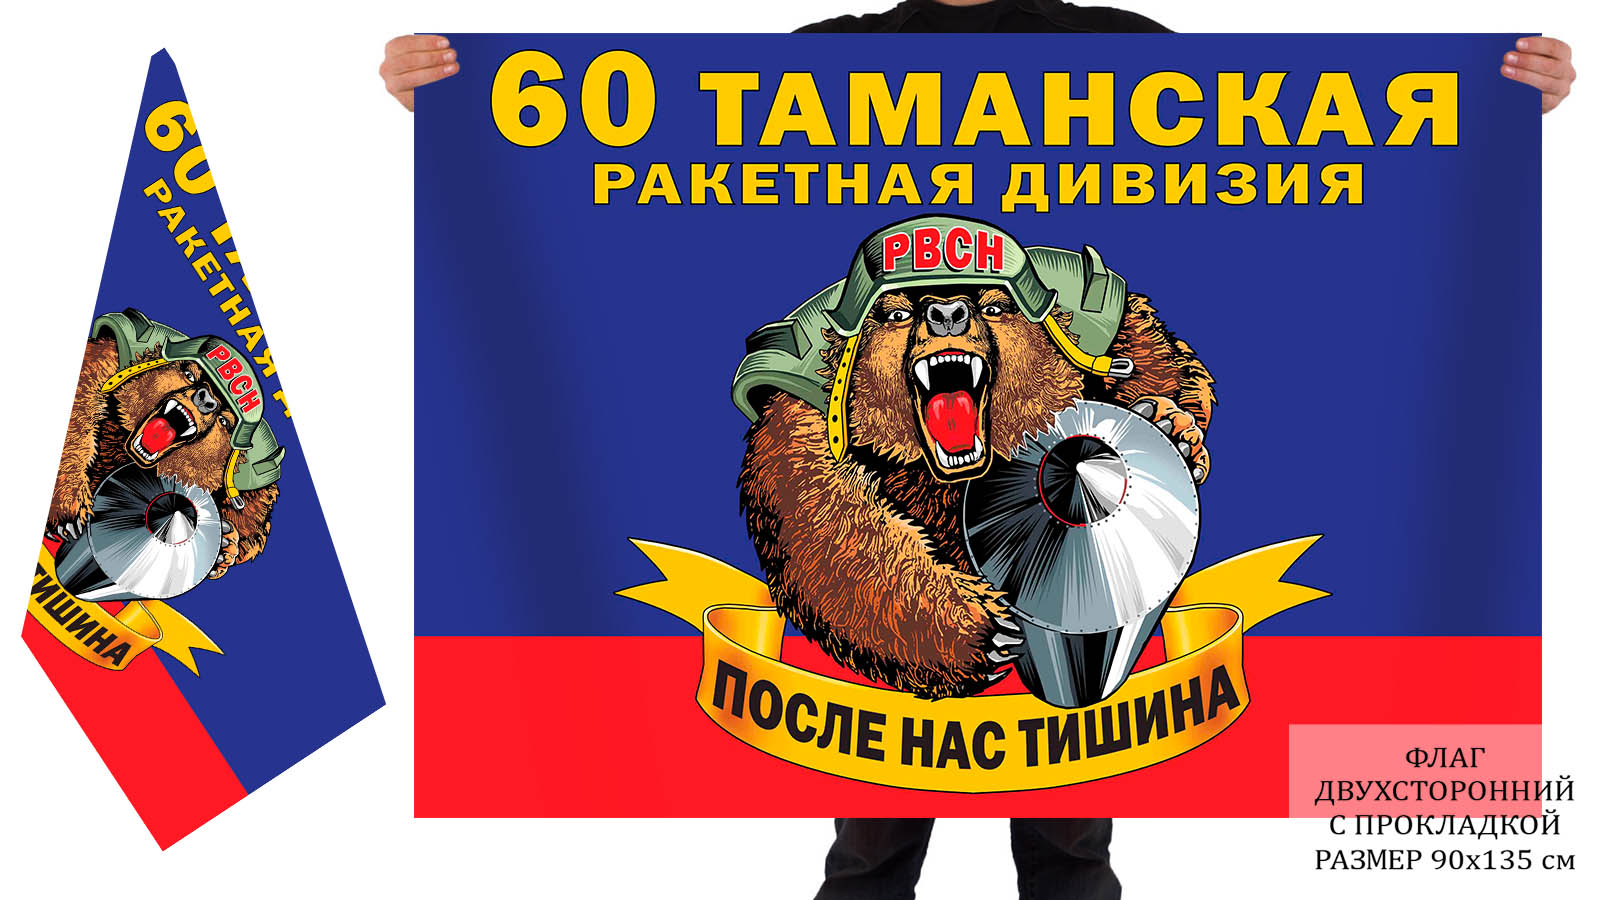 Двусторонний флаг 60 Таманской ракетной дивизии РВСН